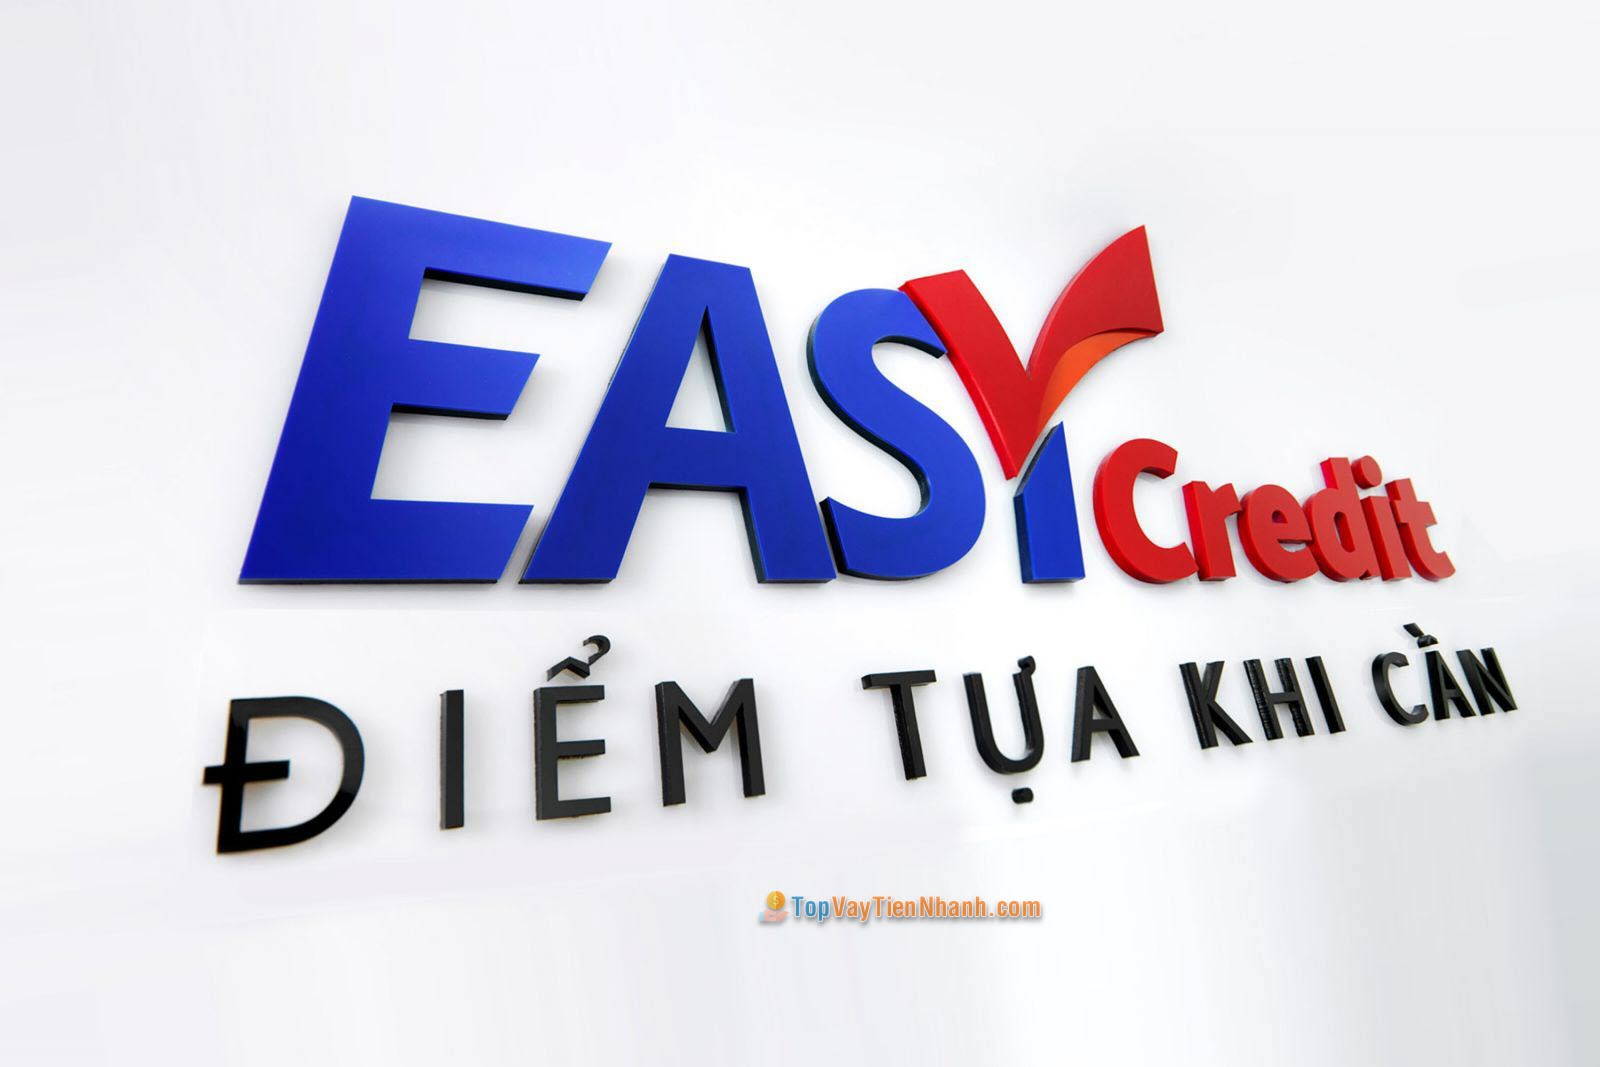 Vay theo hóa đơn điện - Easy Credit